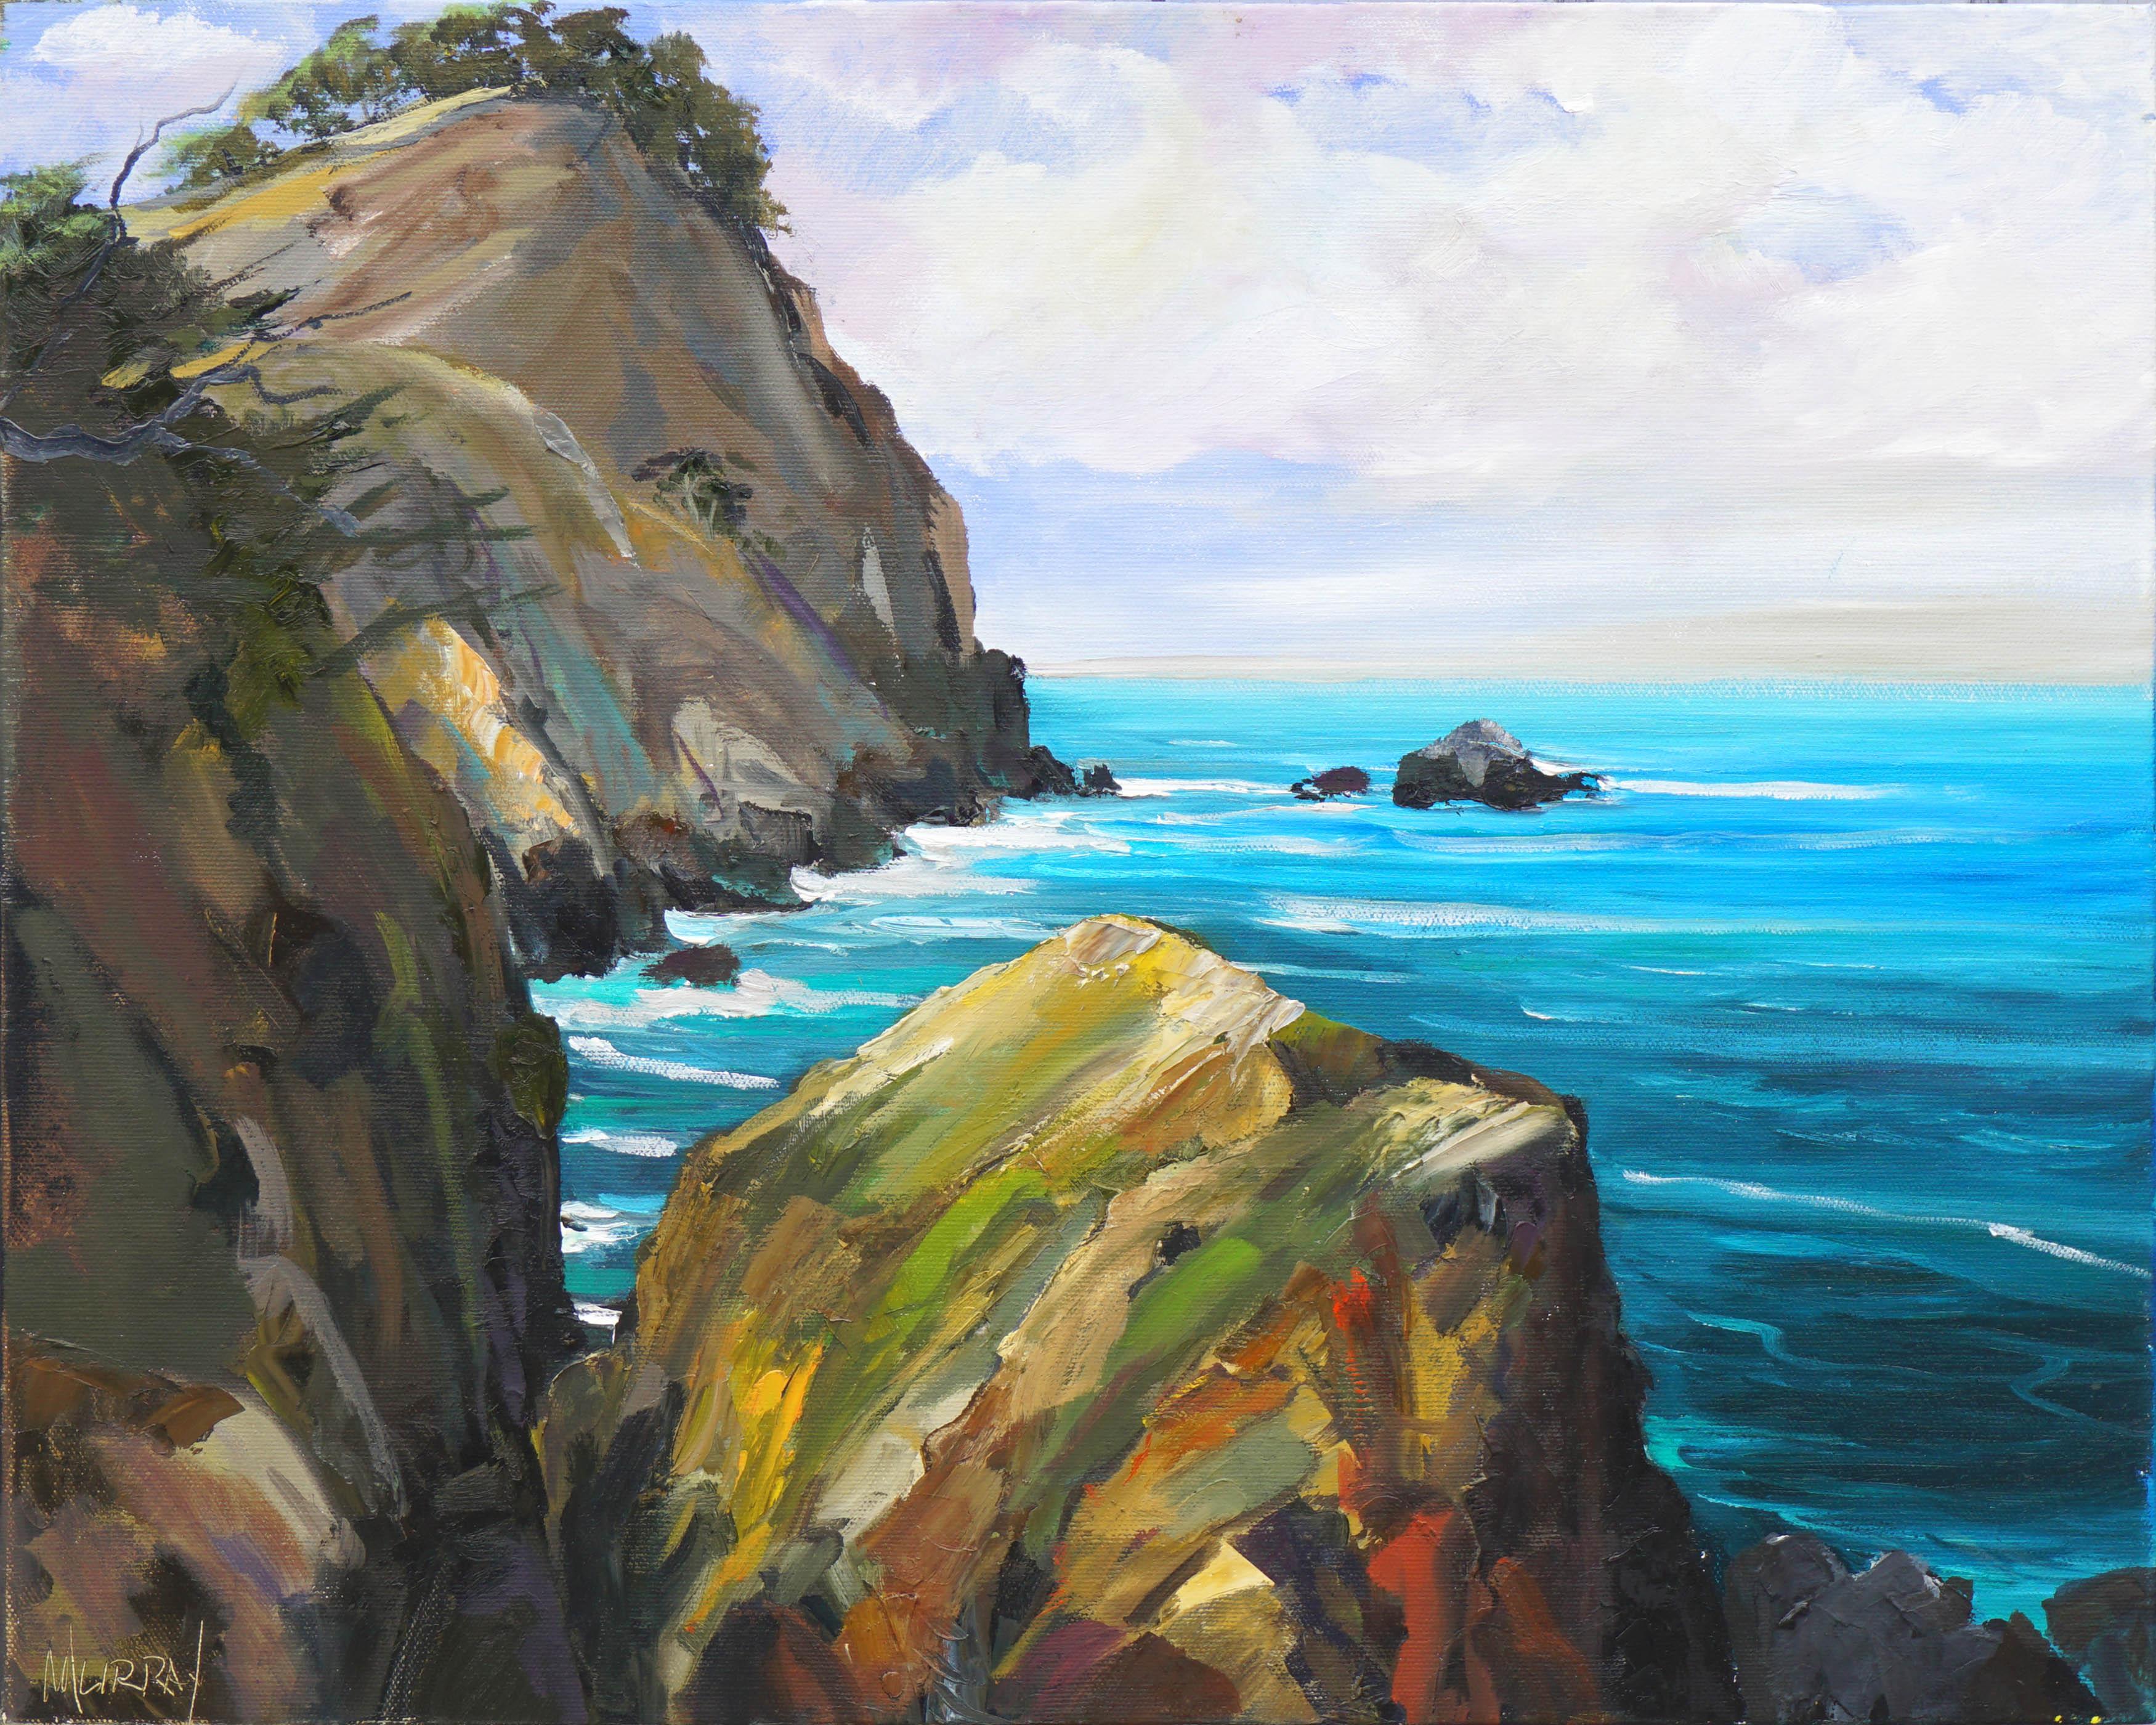 Kathleen Murray Landscape Painting - Big Sur Cliffs, Brilliant Blue Pacific Ocean - Contemporary CA Coastal Seascape